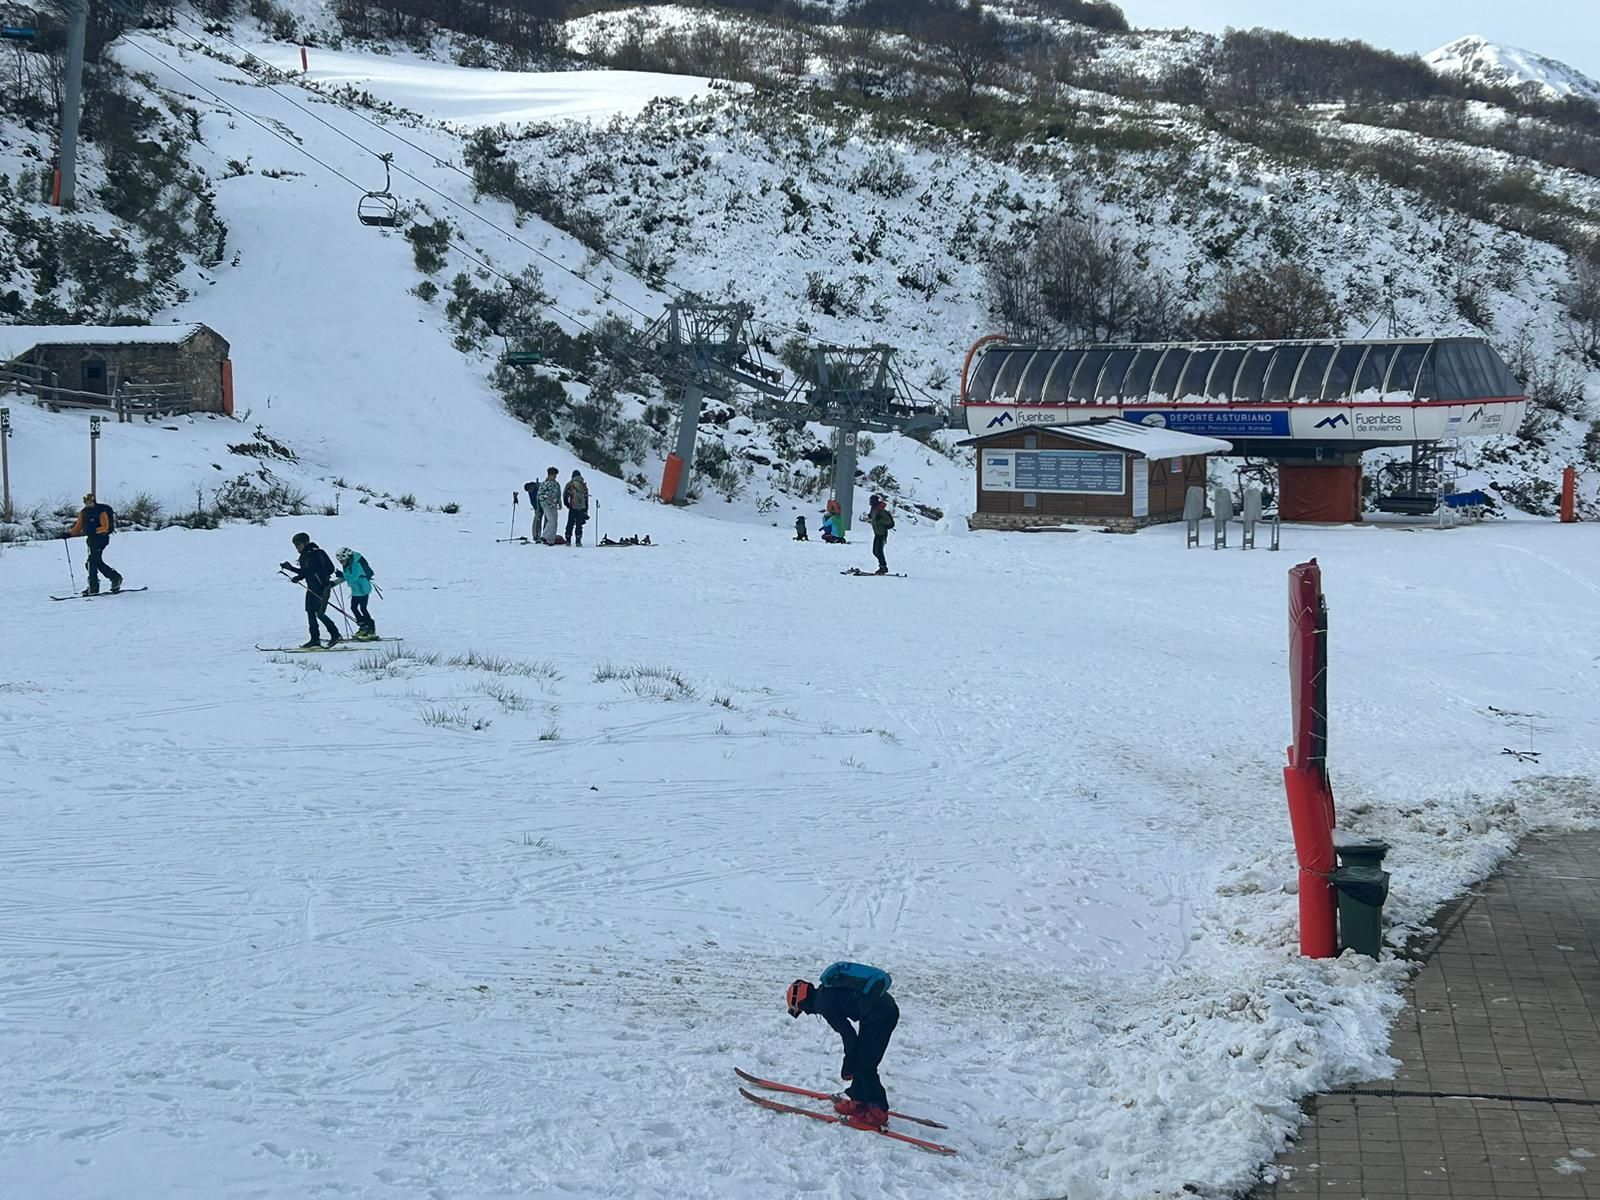 La nieve llega a la estaciones de esquí asturianas